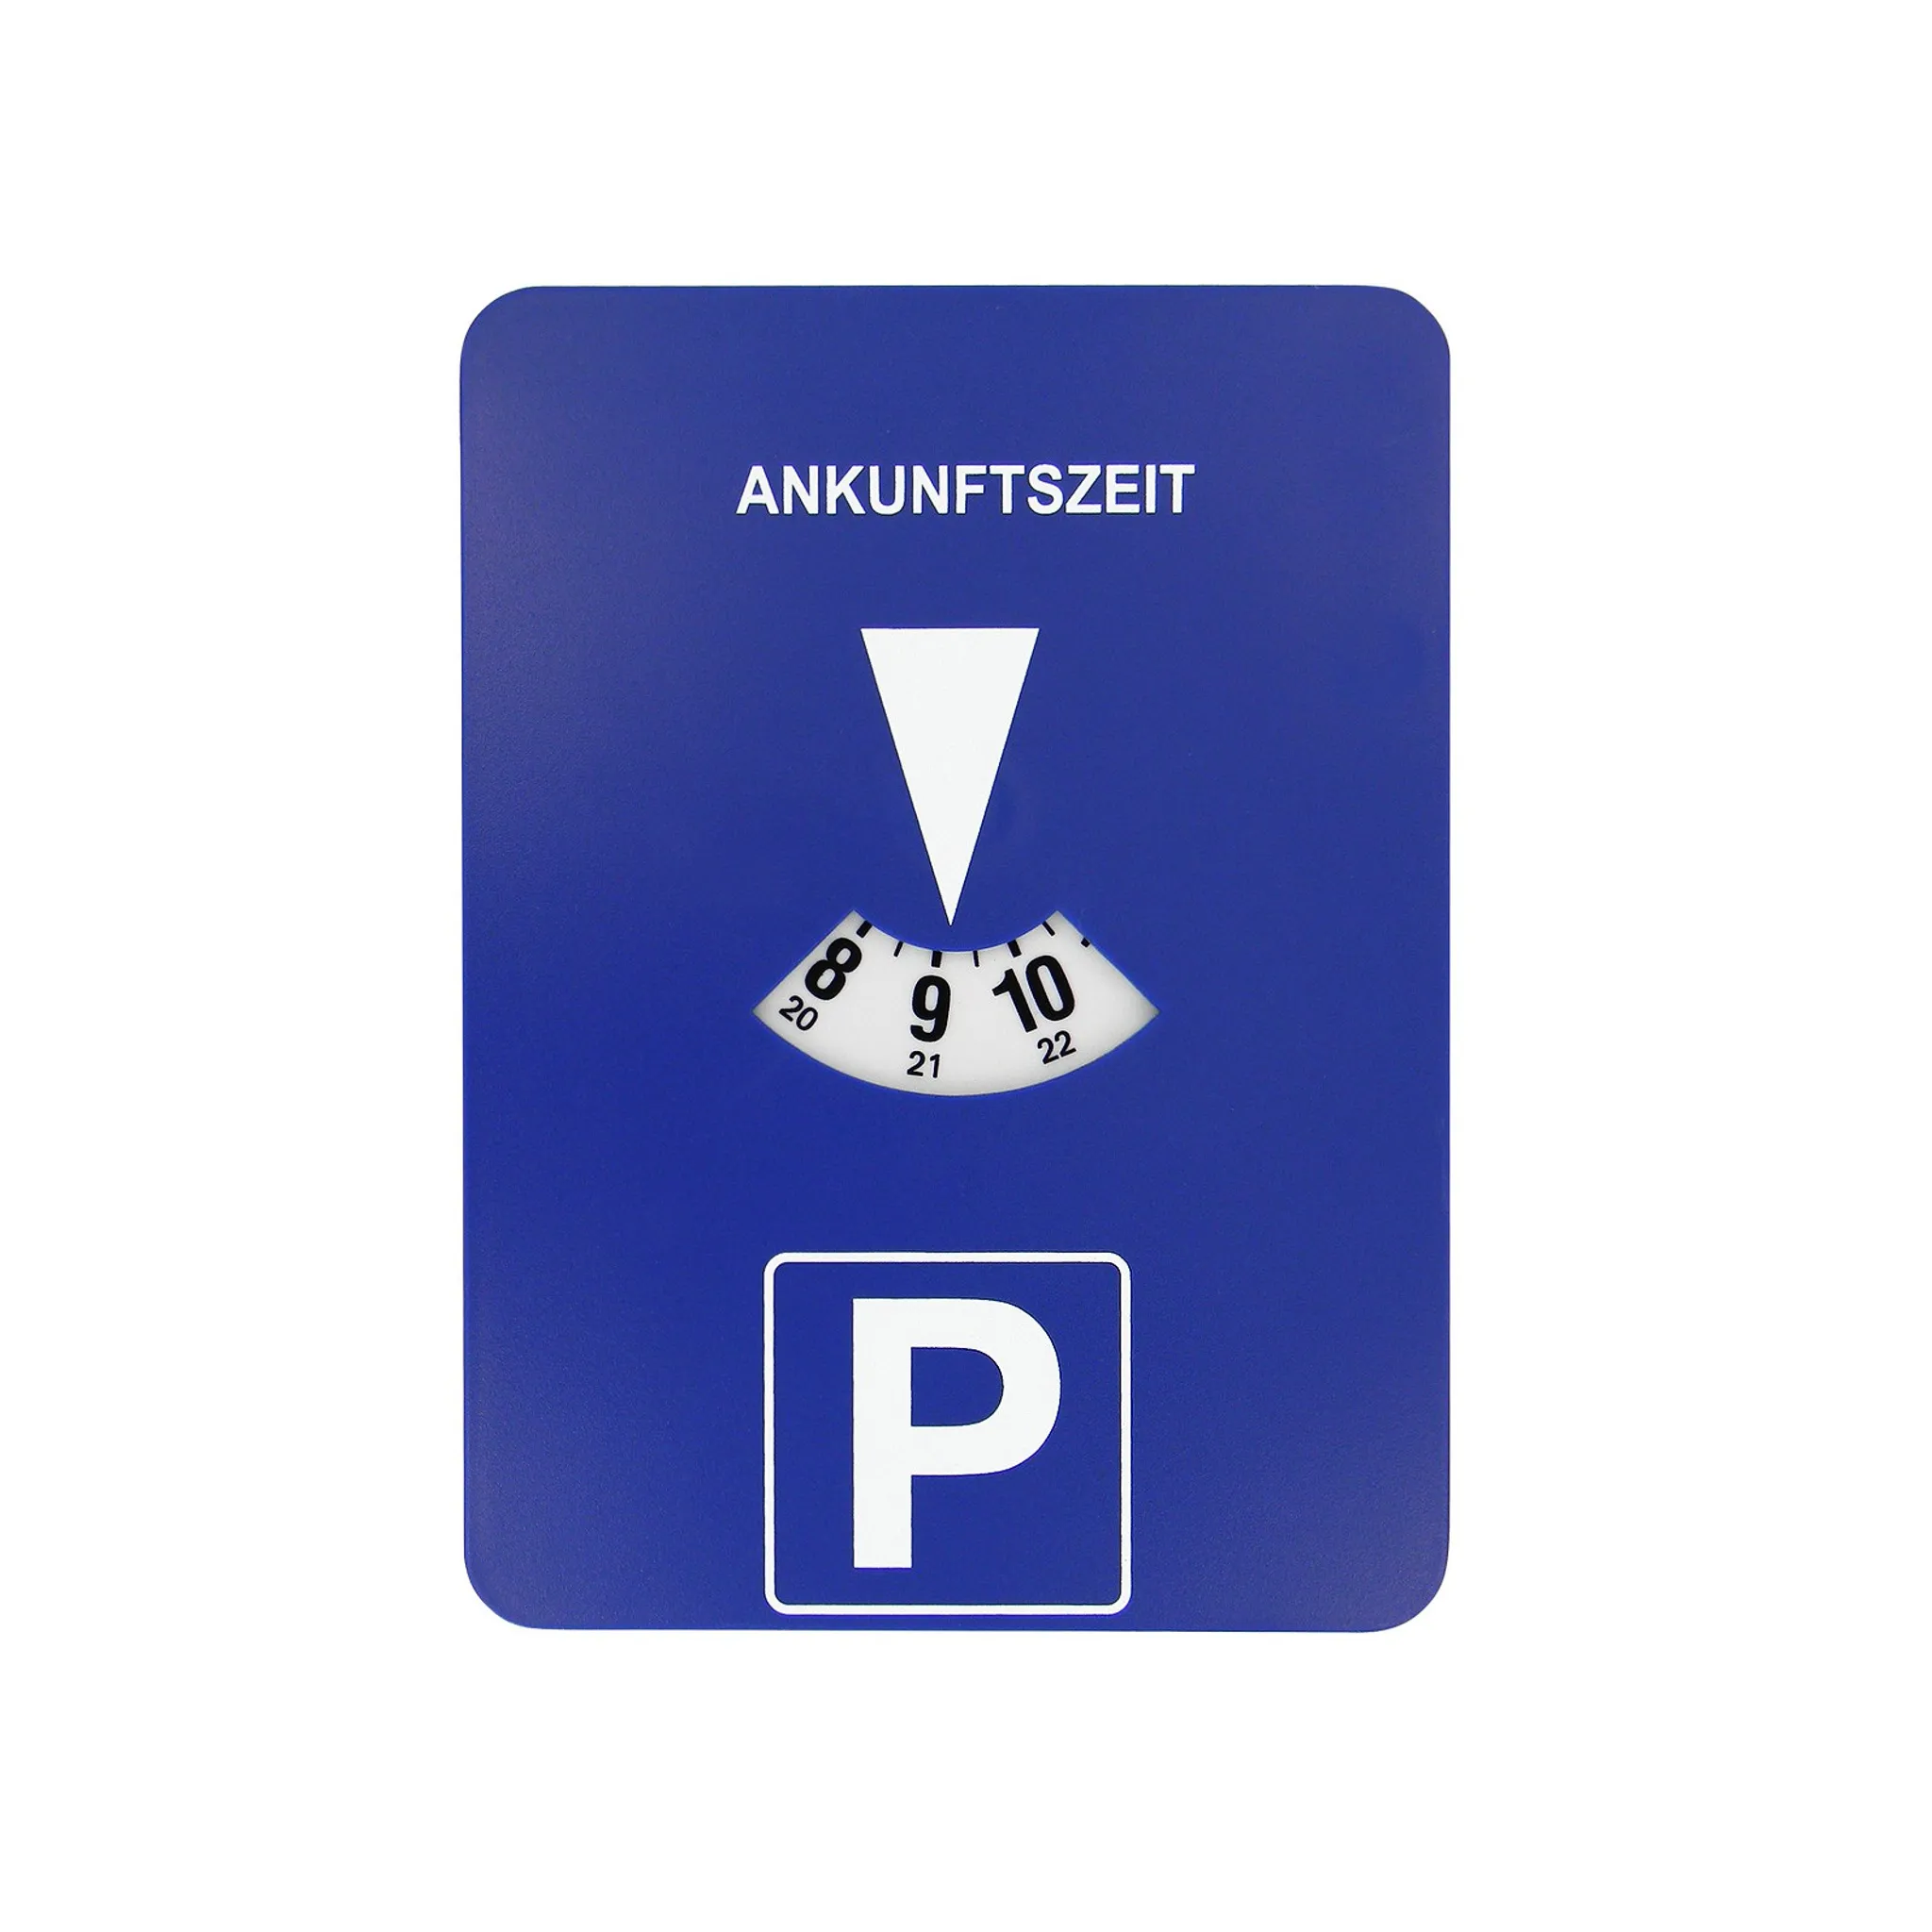 Parkuhr Parkscheibe Mitlaufend Batterie Betrieben-Elektronisch Run/Stop  Schalter